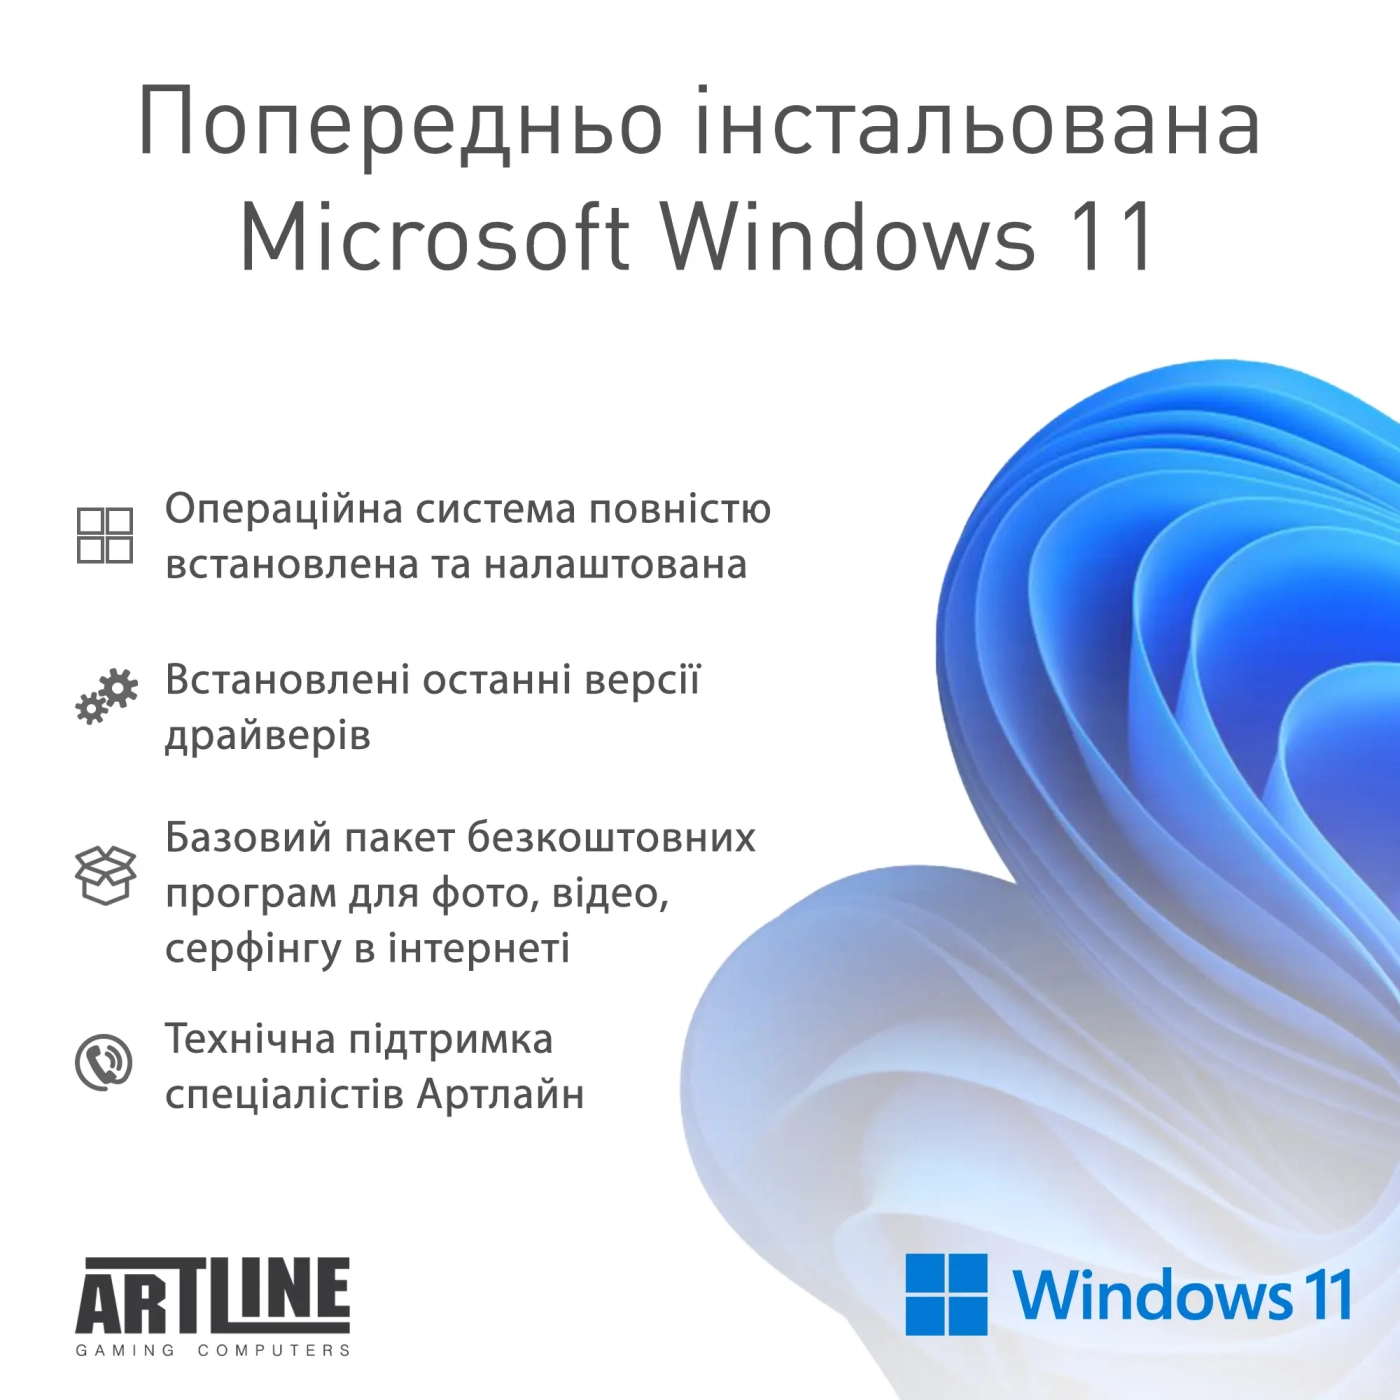 Купить Рабочая станция ARTLINE WorkStation W76 Windows 11 Pro (W76v20Win) - фото 8